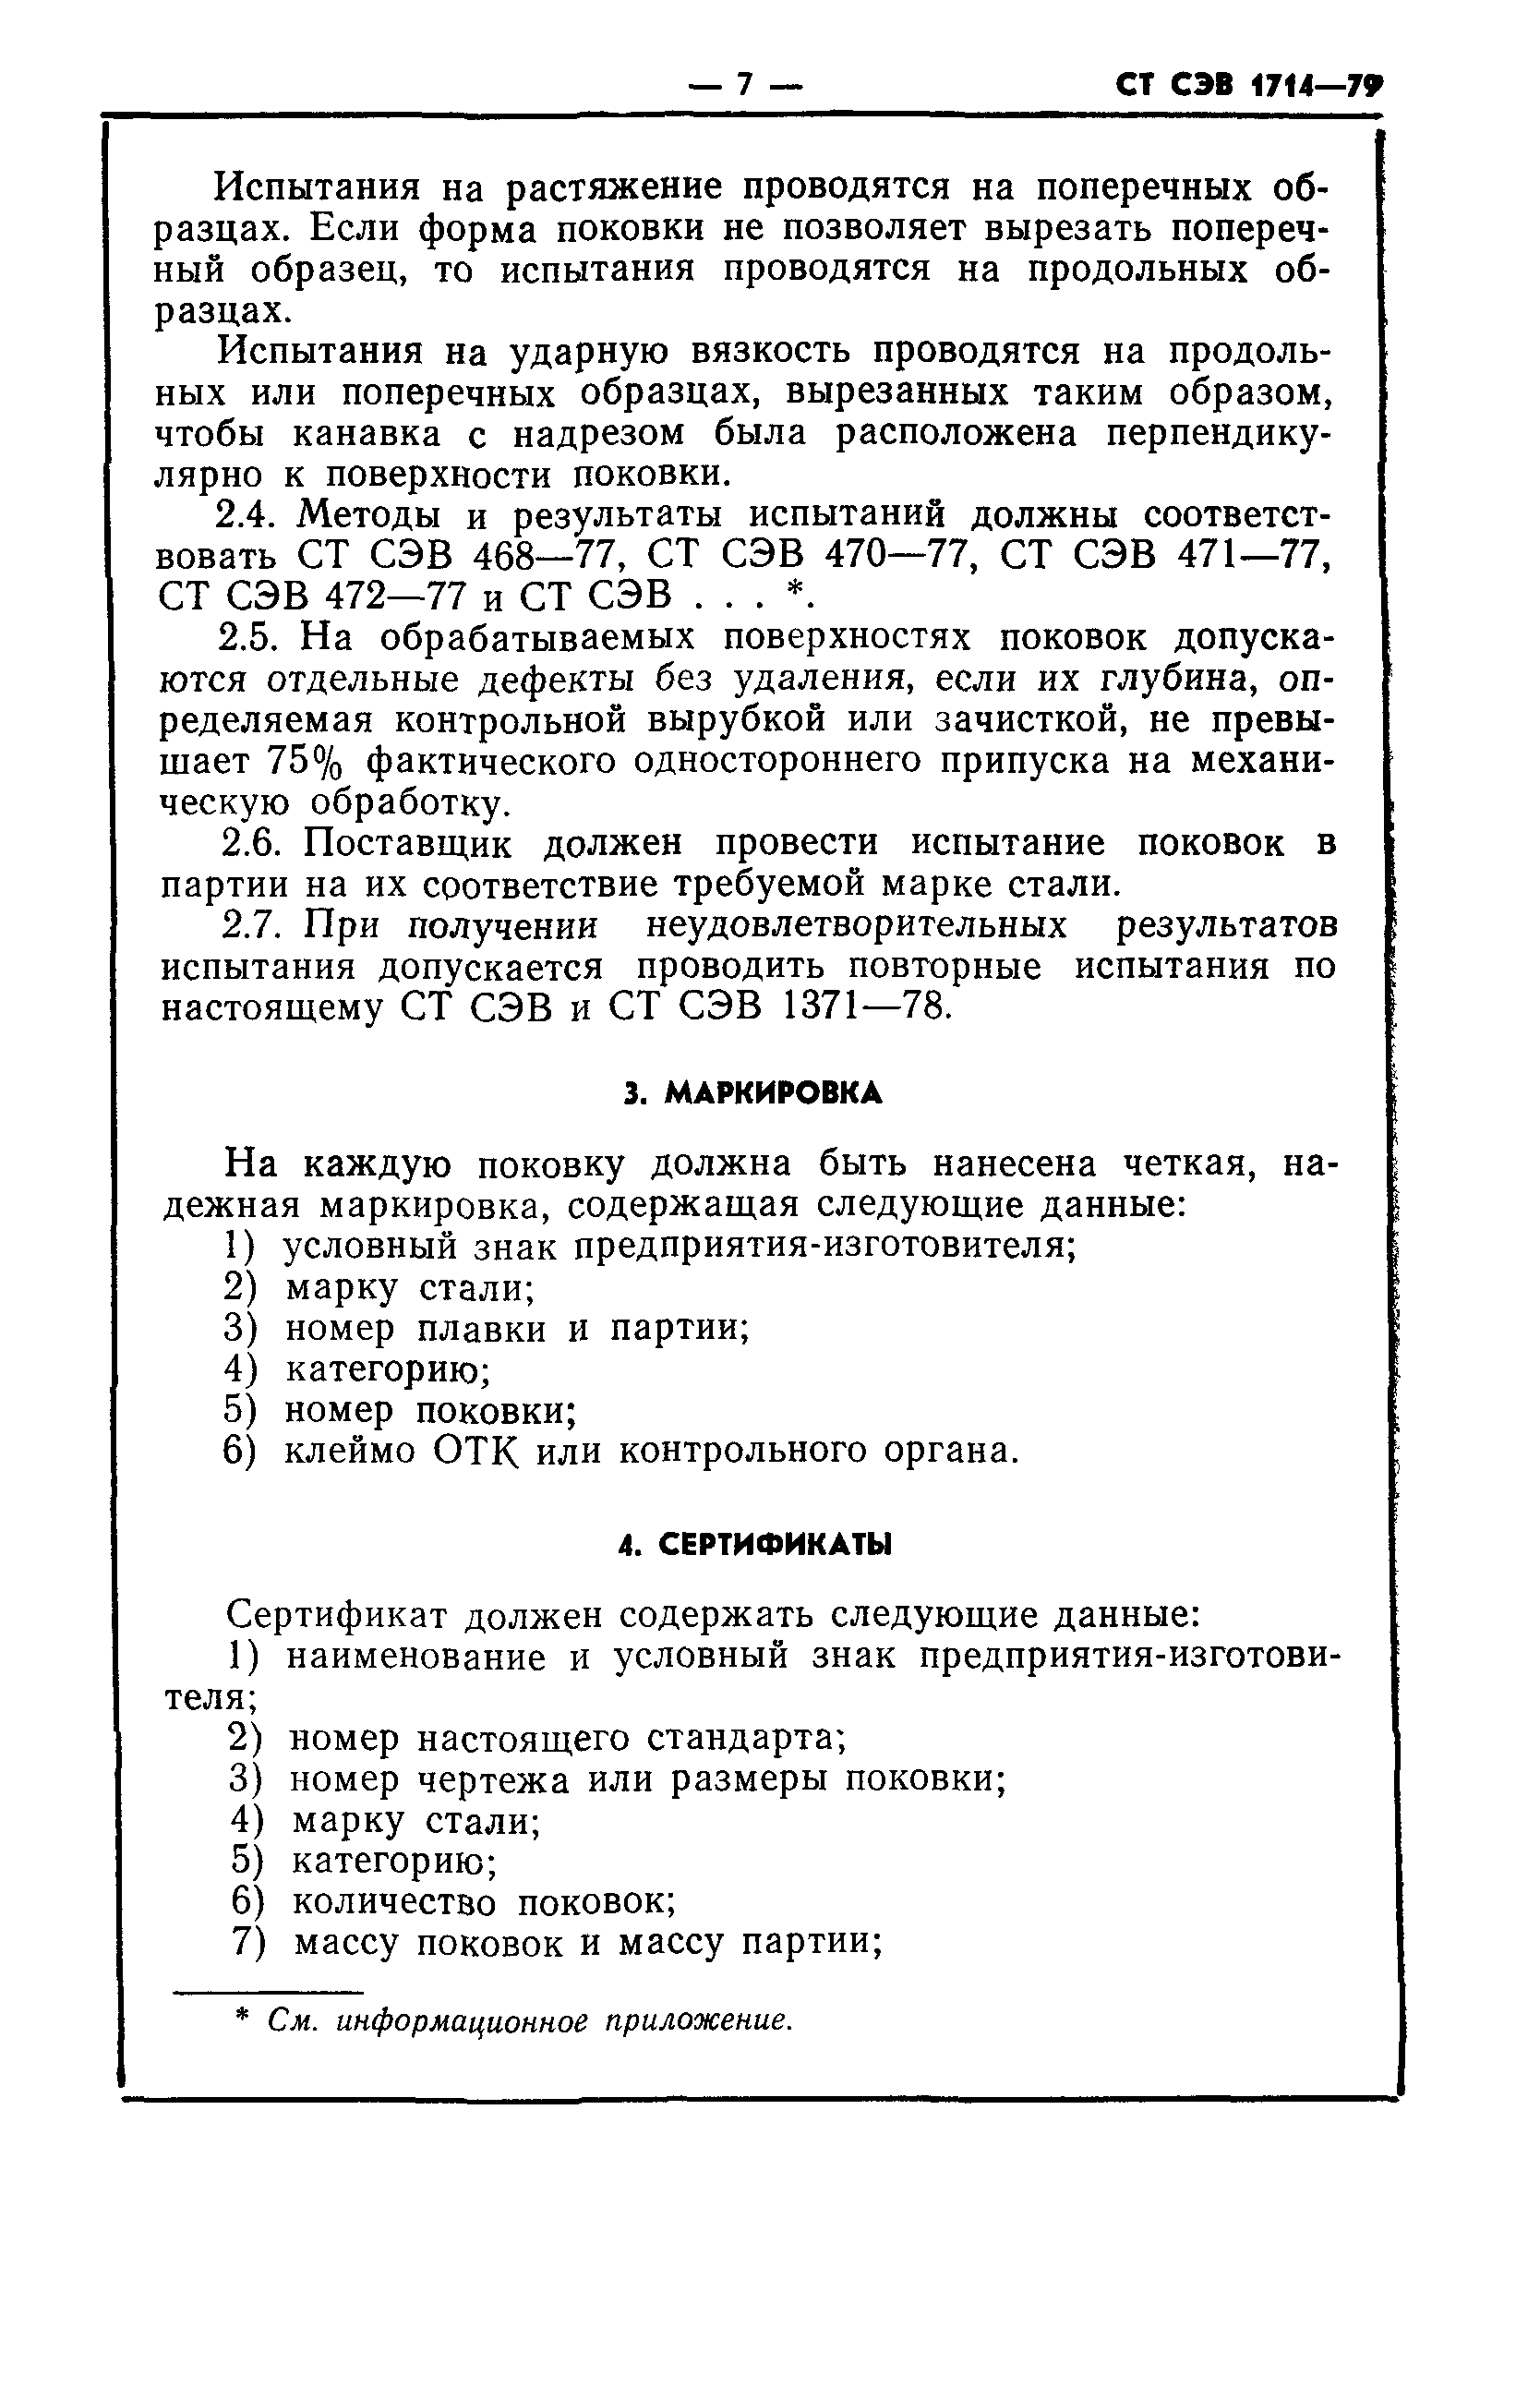 СТ СЭВ 1714-79